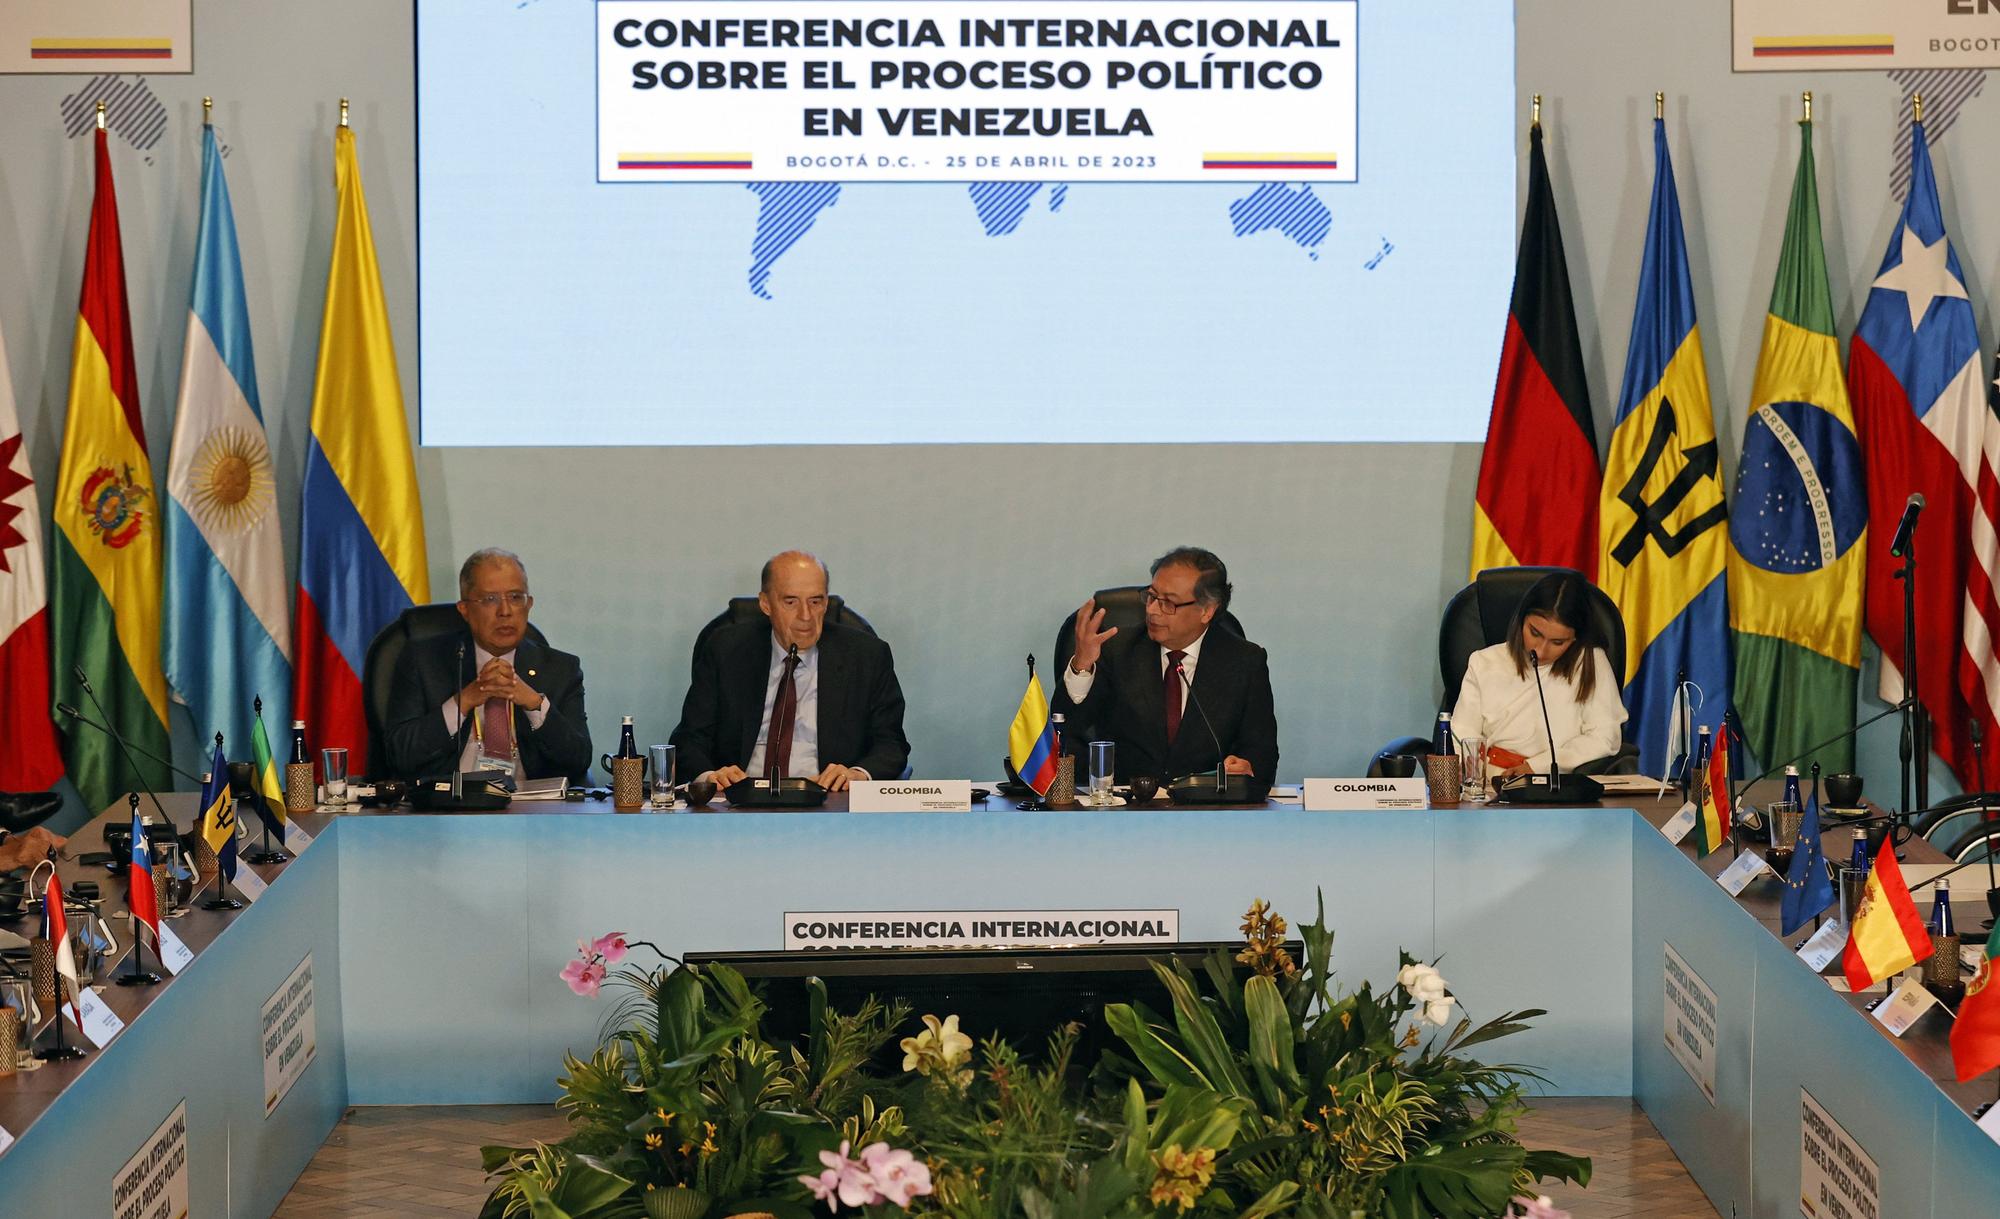 Inauguración de la Conferencia Internacional sobre el Proceso Político en Venezuela, este martes en Bogotá.